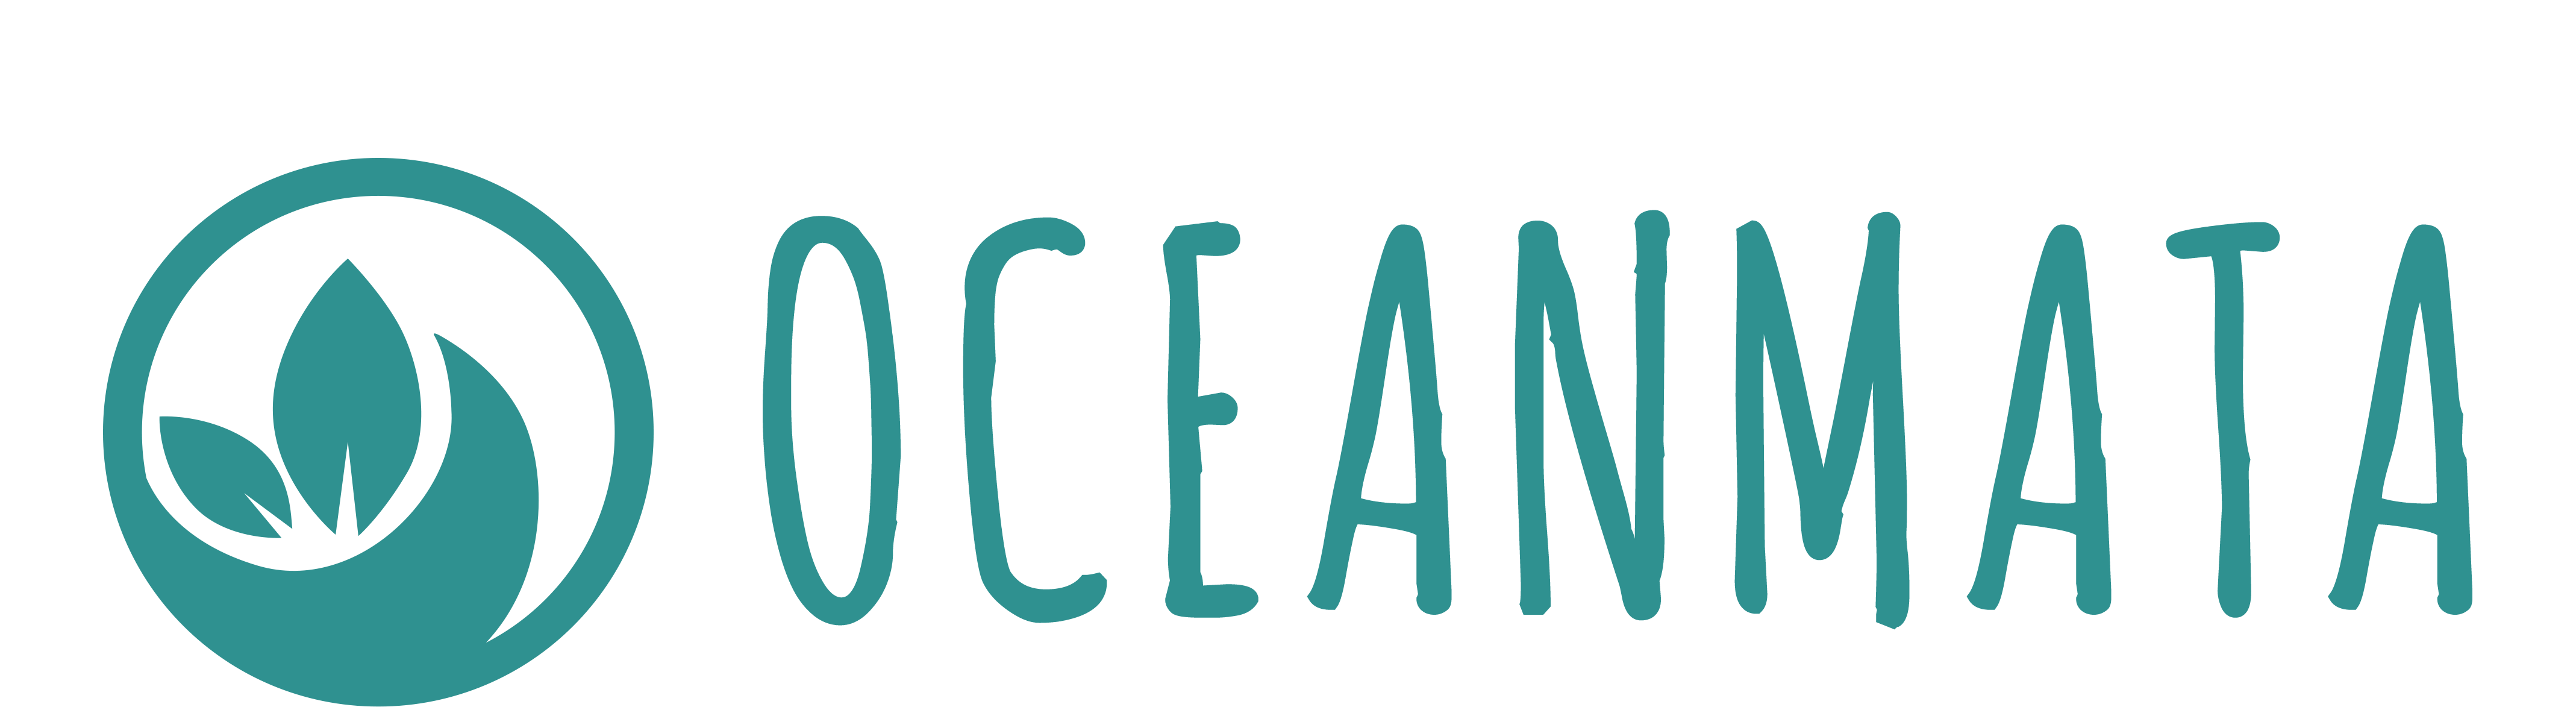 Oceanmata